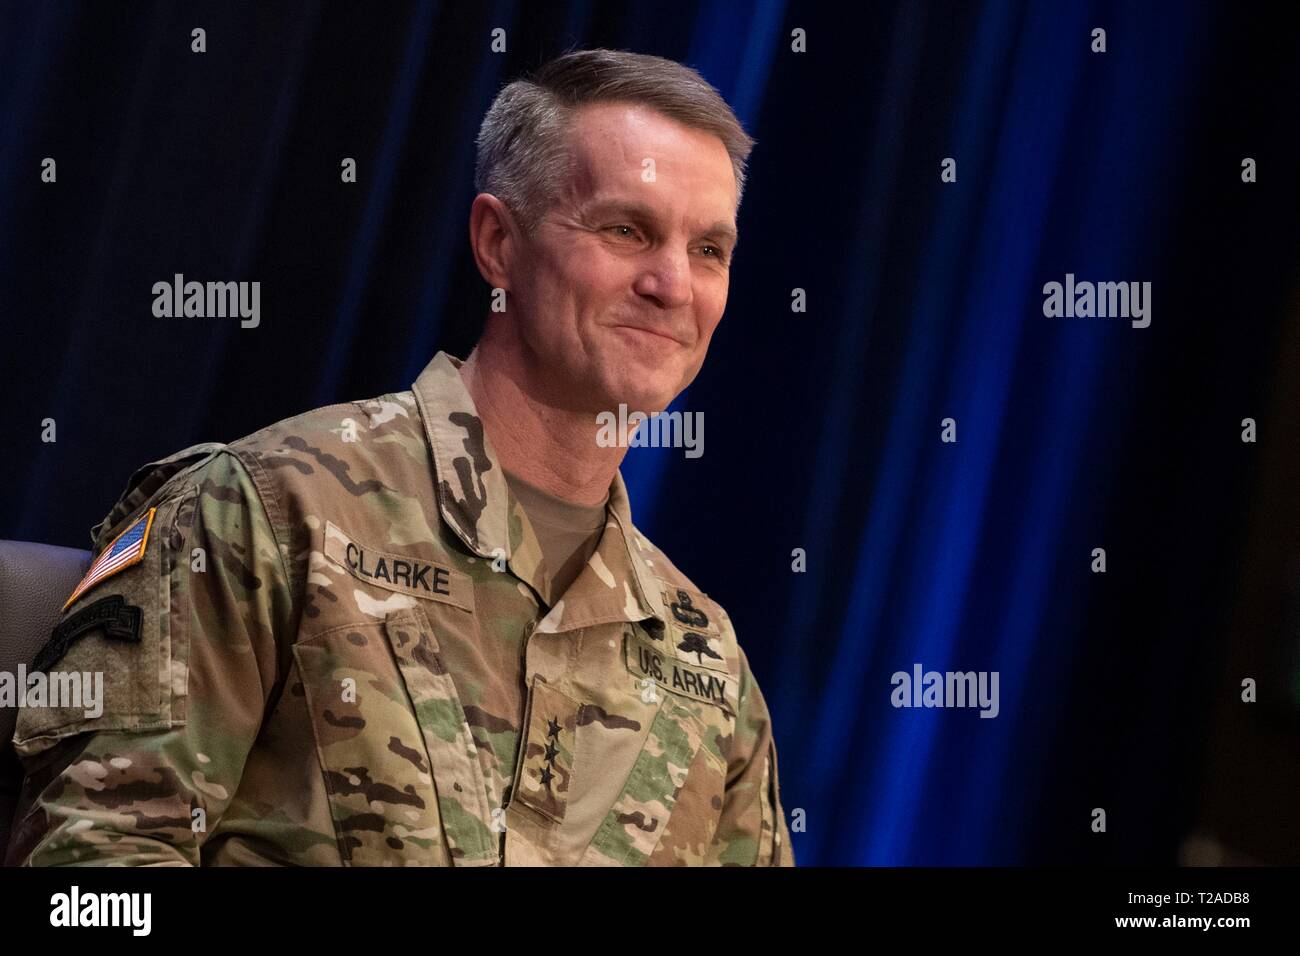 El Teniente General del Ejército de los Estados Unidos Richard D. Clarke durante su ceremonia de ascenso como un general de cuatro estrellas y el nuevo comandante del Comando de Operaciones Especiales durante una ceremonia celebrada en la base de la Fuerza Aérea Macdill, 29 de marzo de 2019 en Tampa, Florida. Foto de stock